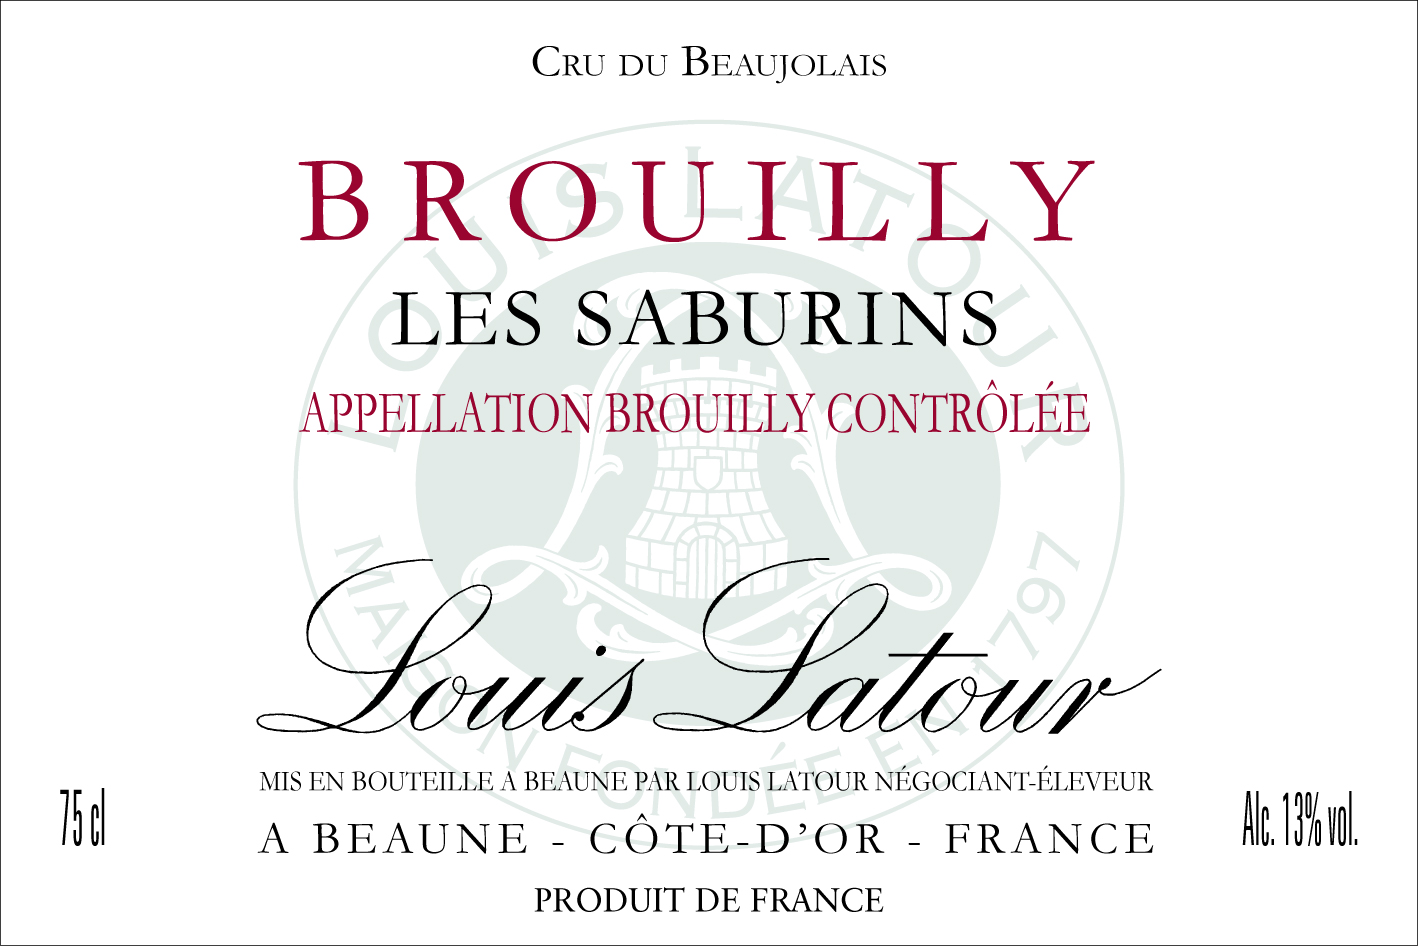 Brouilly Les Saburins